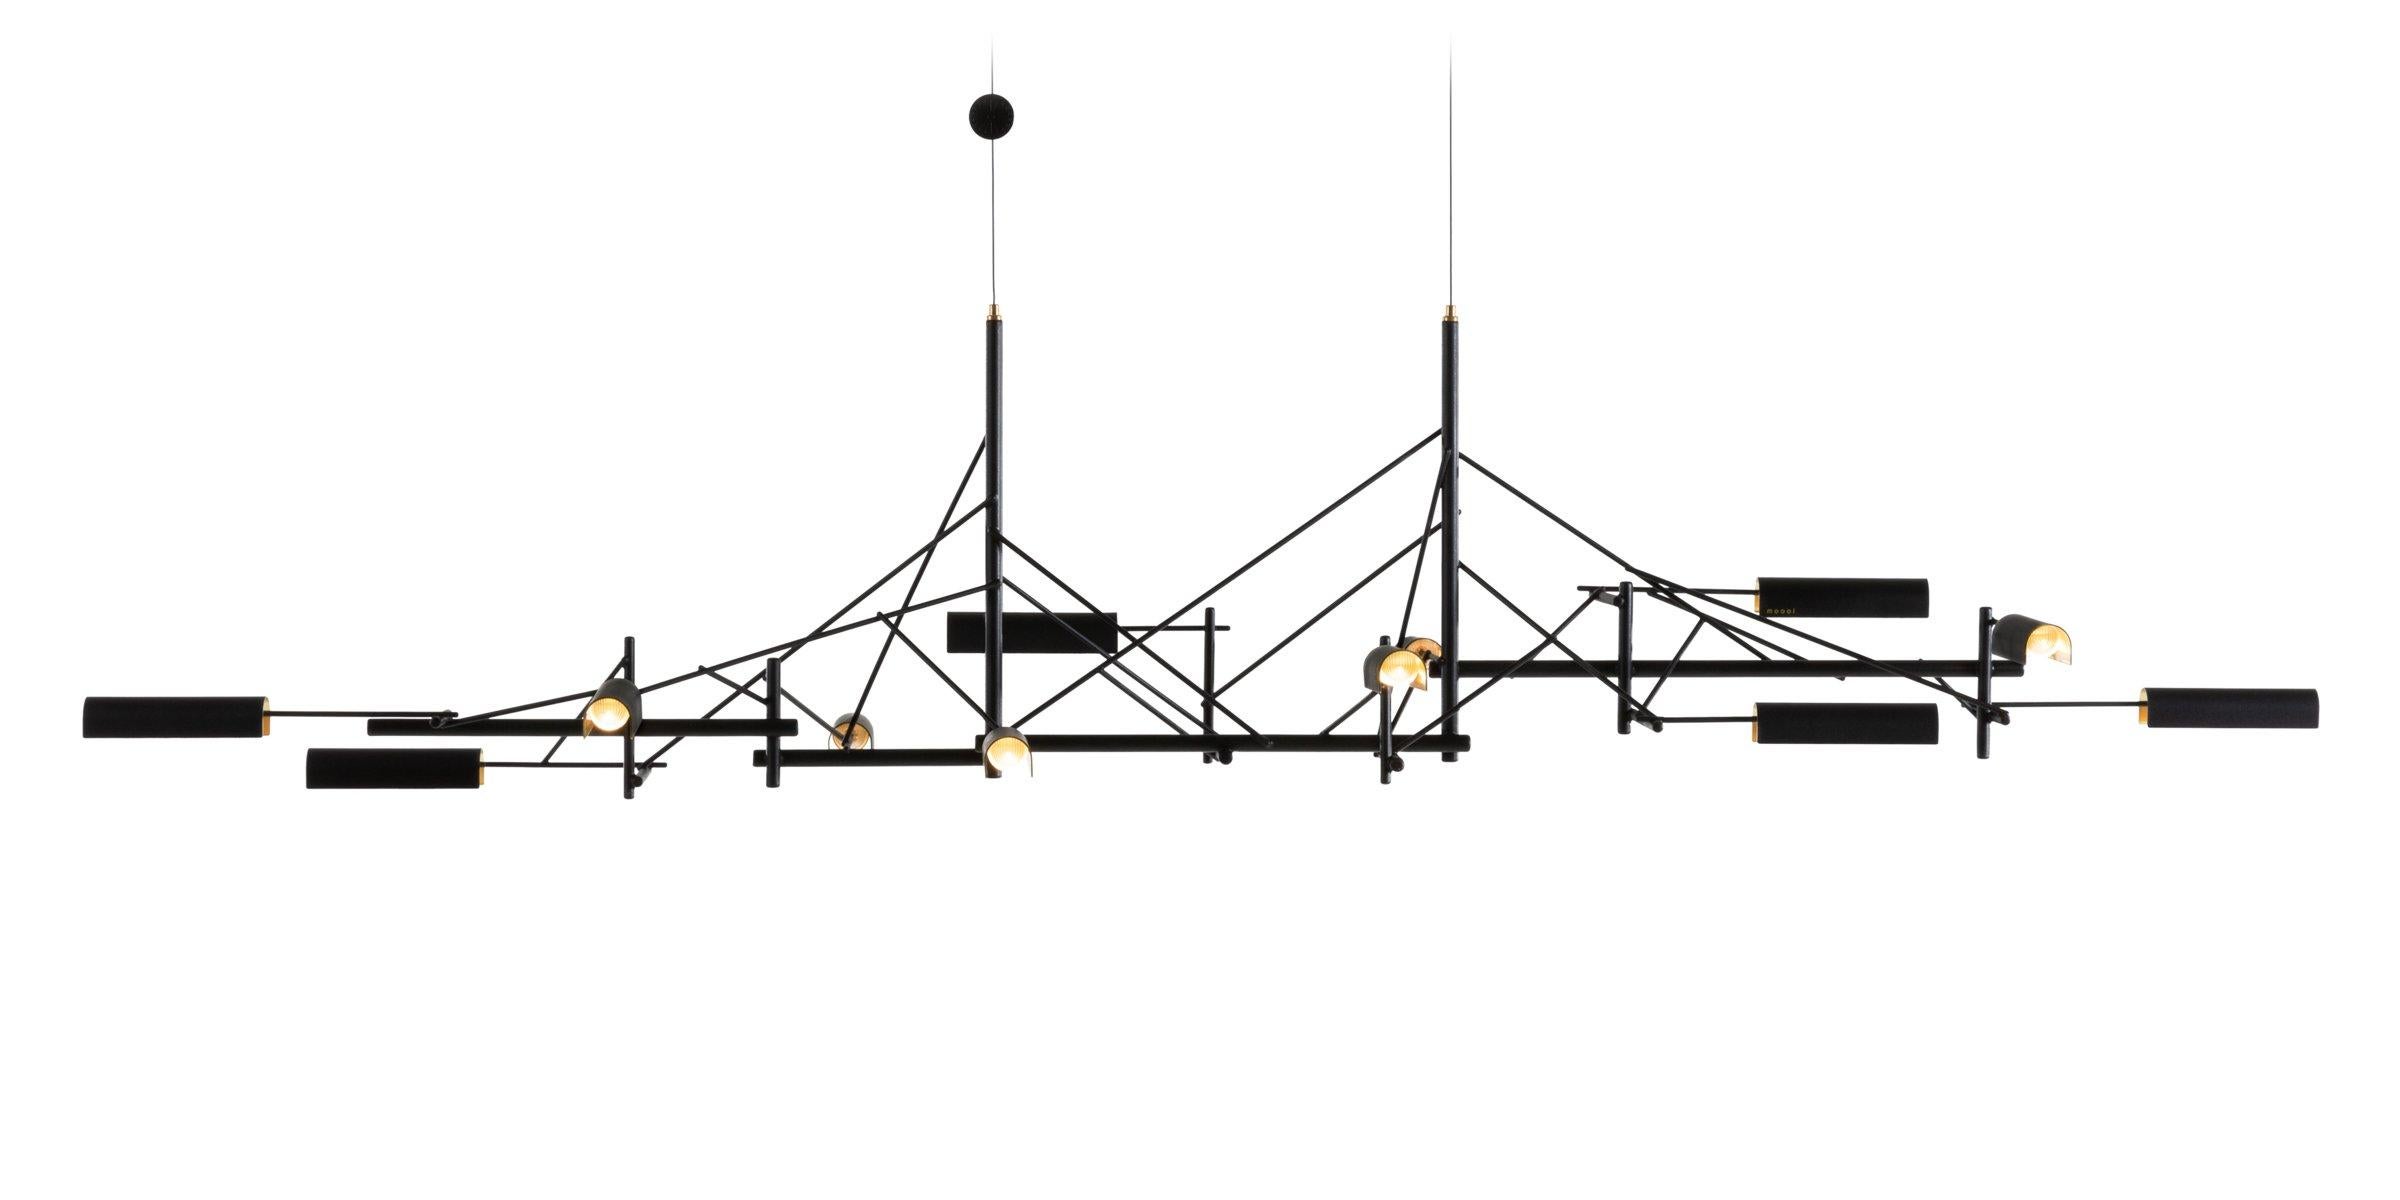 Tinkering, entworfen von Joost van Bleiswijk, besticht durch eine rhythmische Komposition aus schwarz beschichtetem Edelstahl und Messing. Diese Hängeleuchte ist in zwei Größen erhältlich, Tinkering 85 und Tinkering 140, die mit 7 bzw. 12